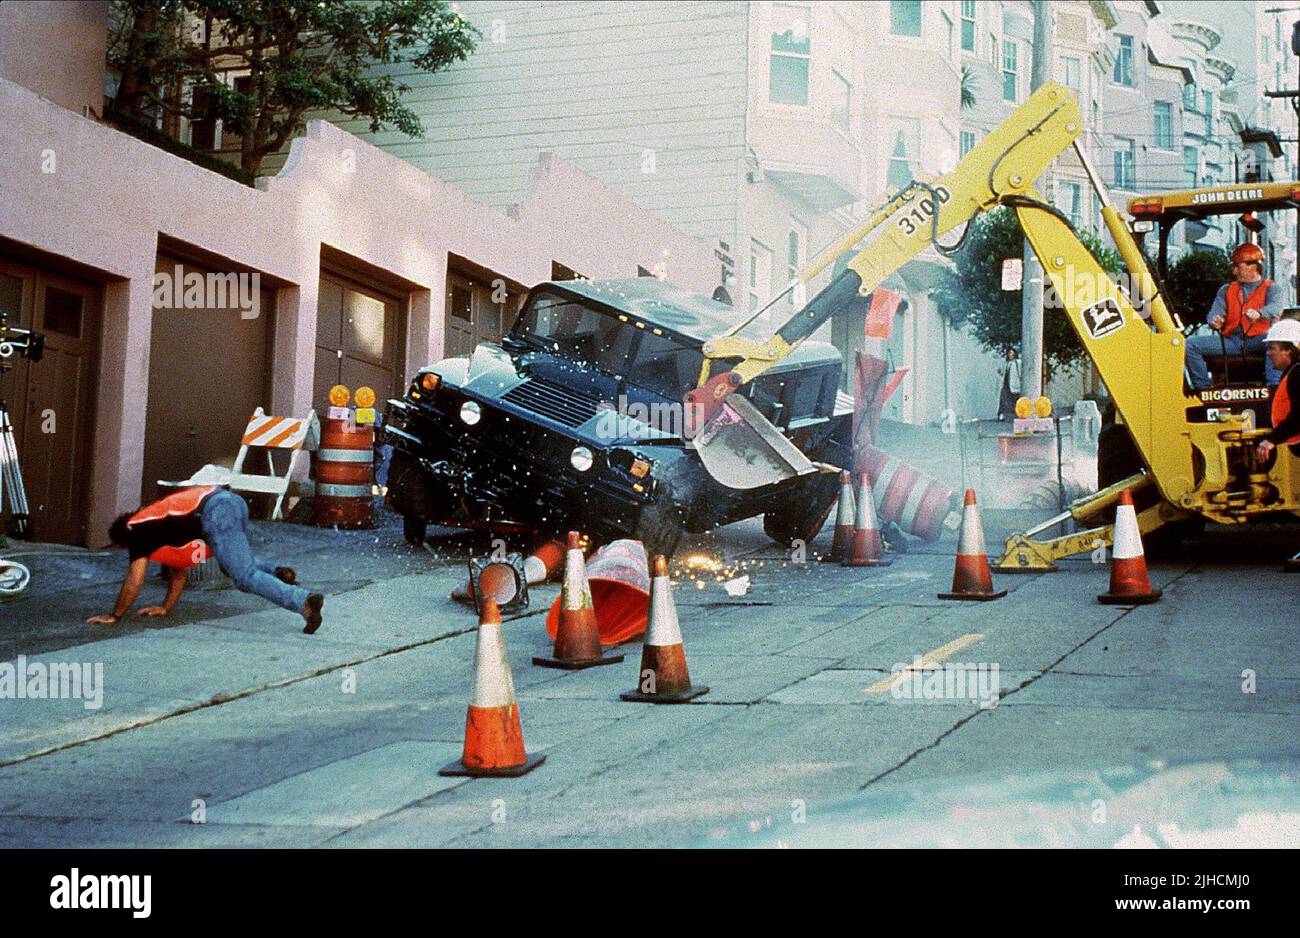 Les accidents de voiture, des accidents passés le Rocher, 1996 Banque D'Images